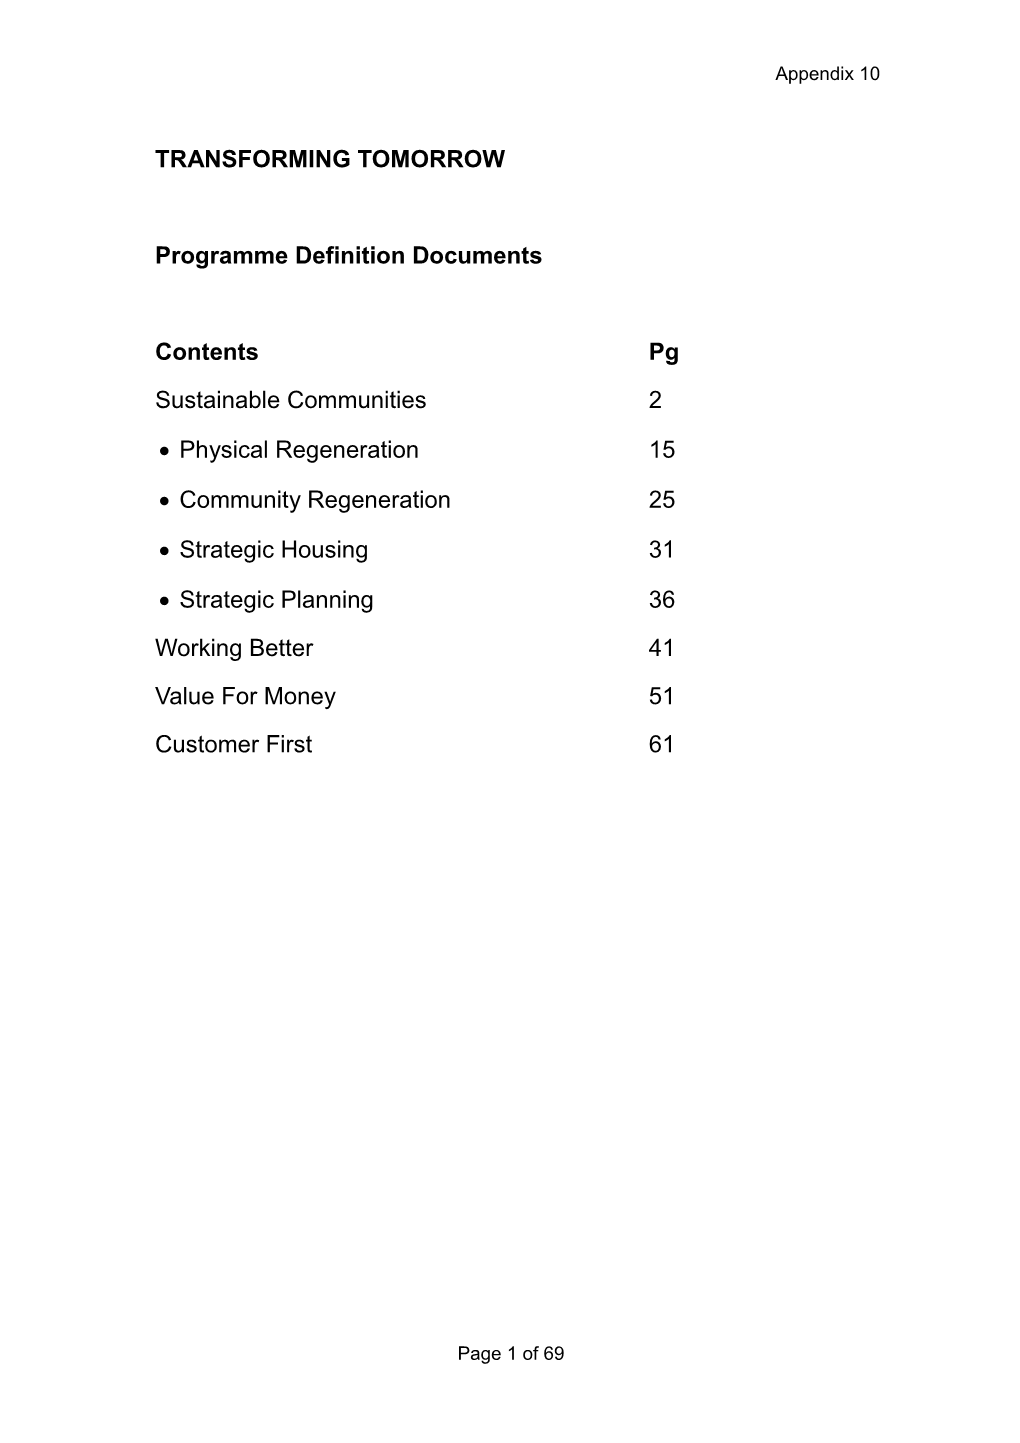 BVBC Programme Definition Document (Template)